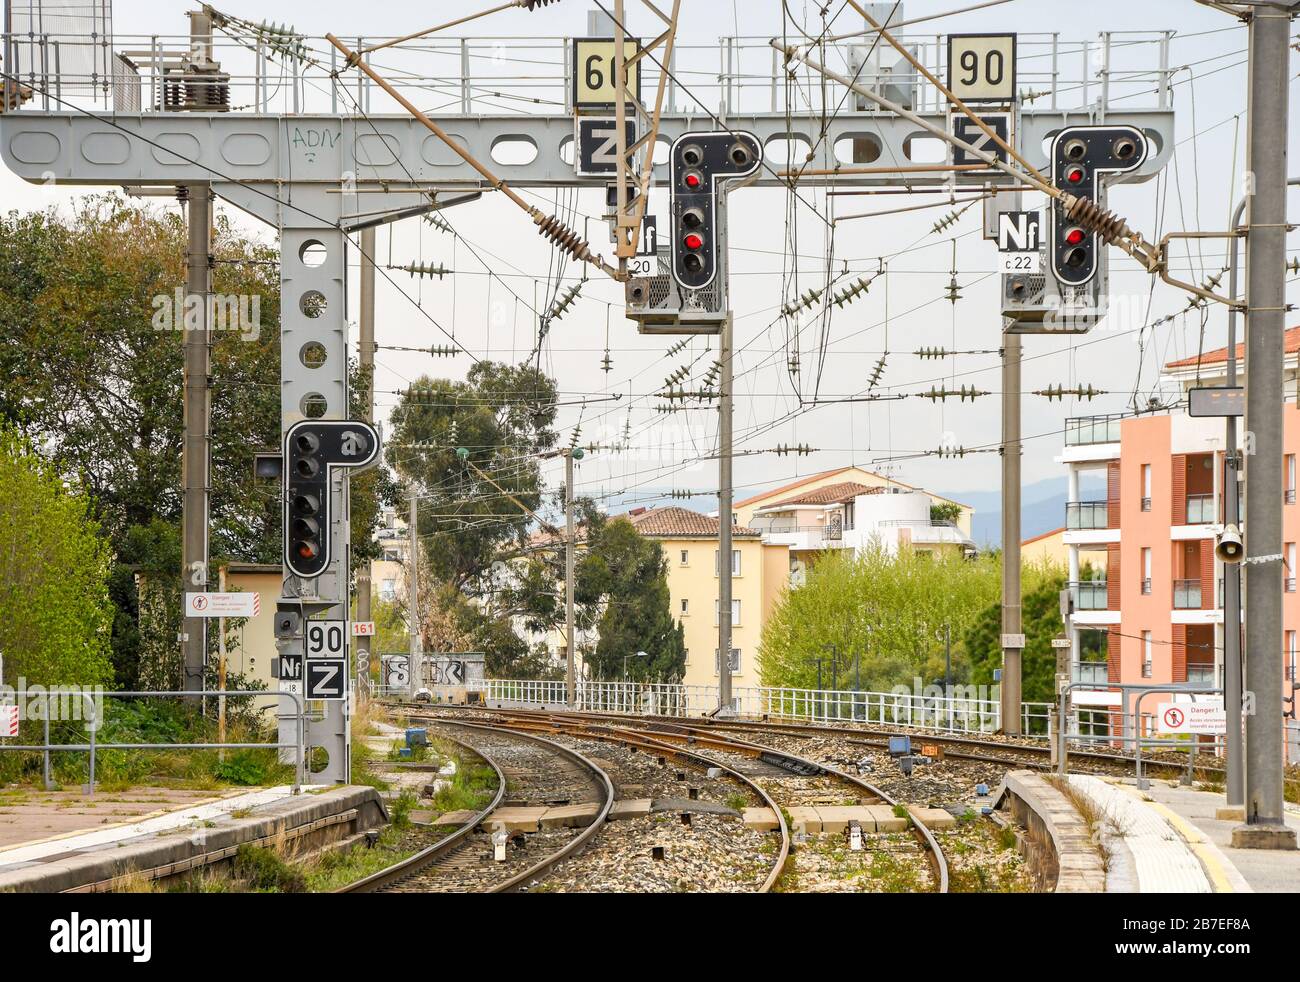 ST RAPHAEL, FRANCIA - APRILE 2019: Segnale di direzione sopra i binari con luci rosse alla stazione ferroviaria di St Raphael sulla Riviera Francese. Foto Stock